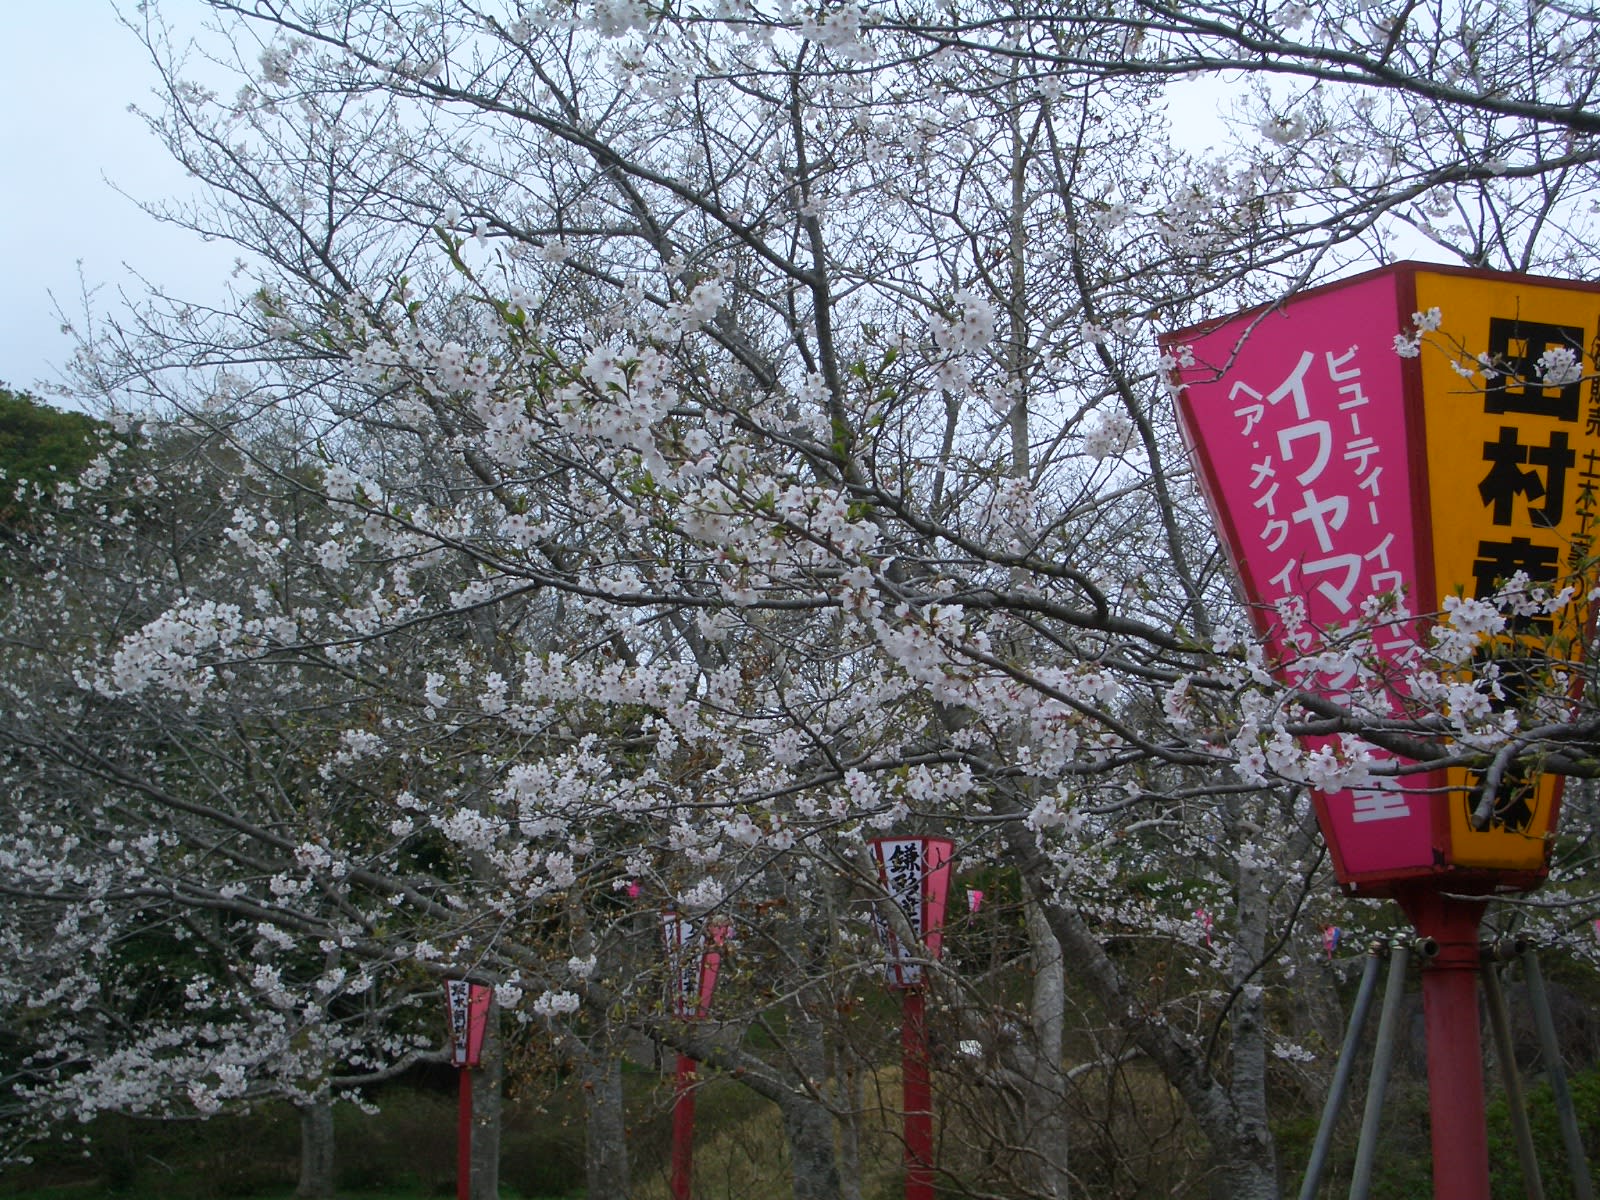 小見川 城山公園の桜 小見川 高橋つり具 ブログ